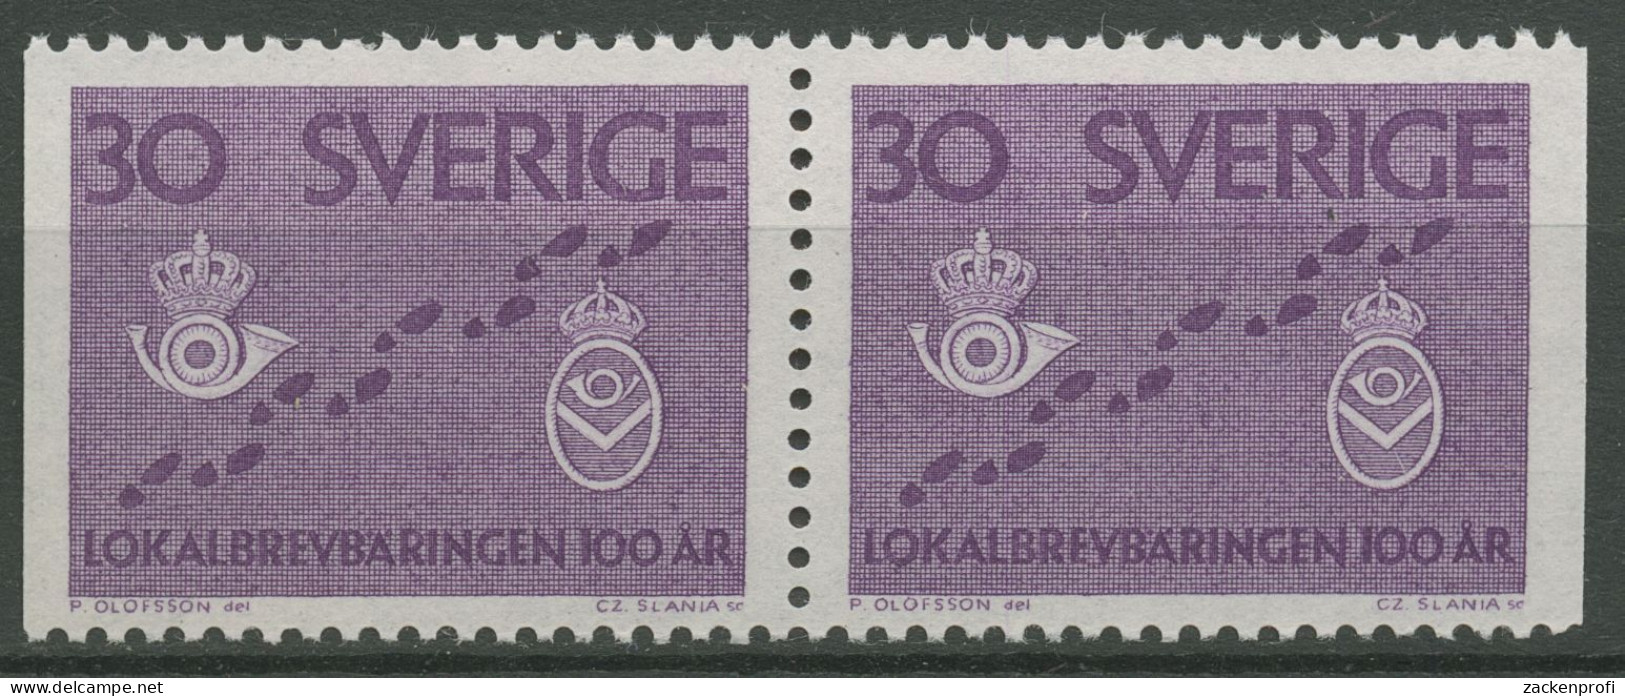 Schweden 1962 Postzustellung Briefträger-Brustschilder 485 Dl/Dr Paar Postfrisch - Ongebruikt